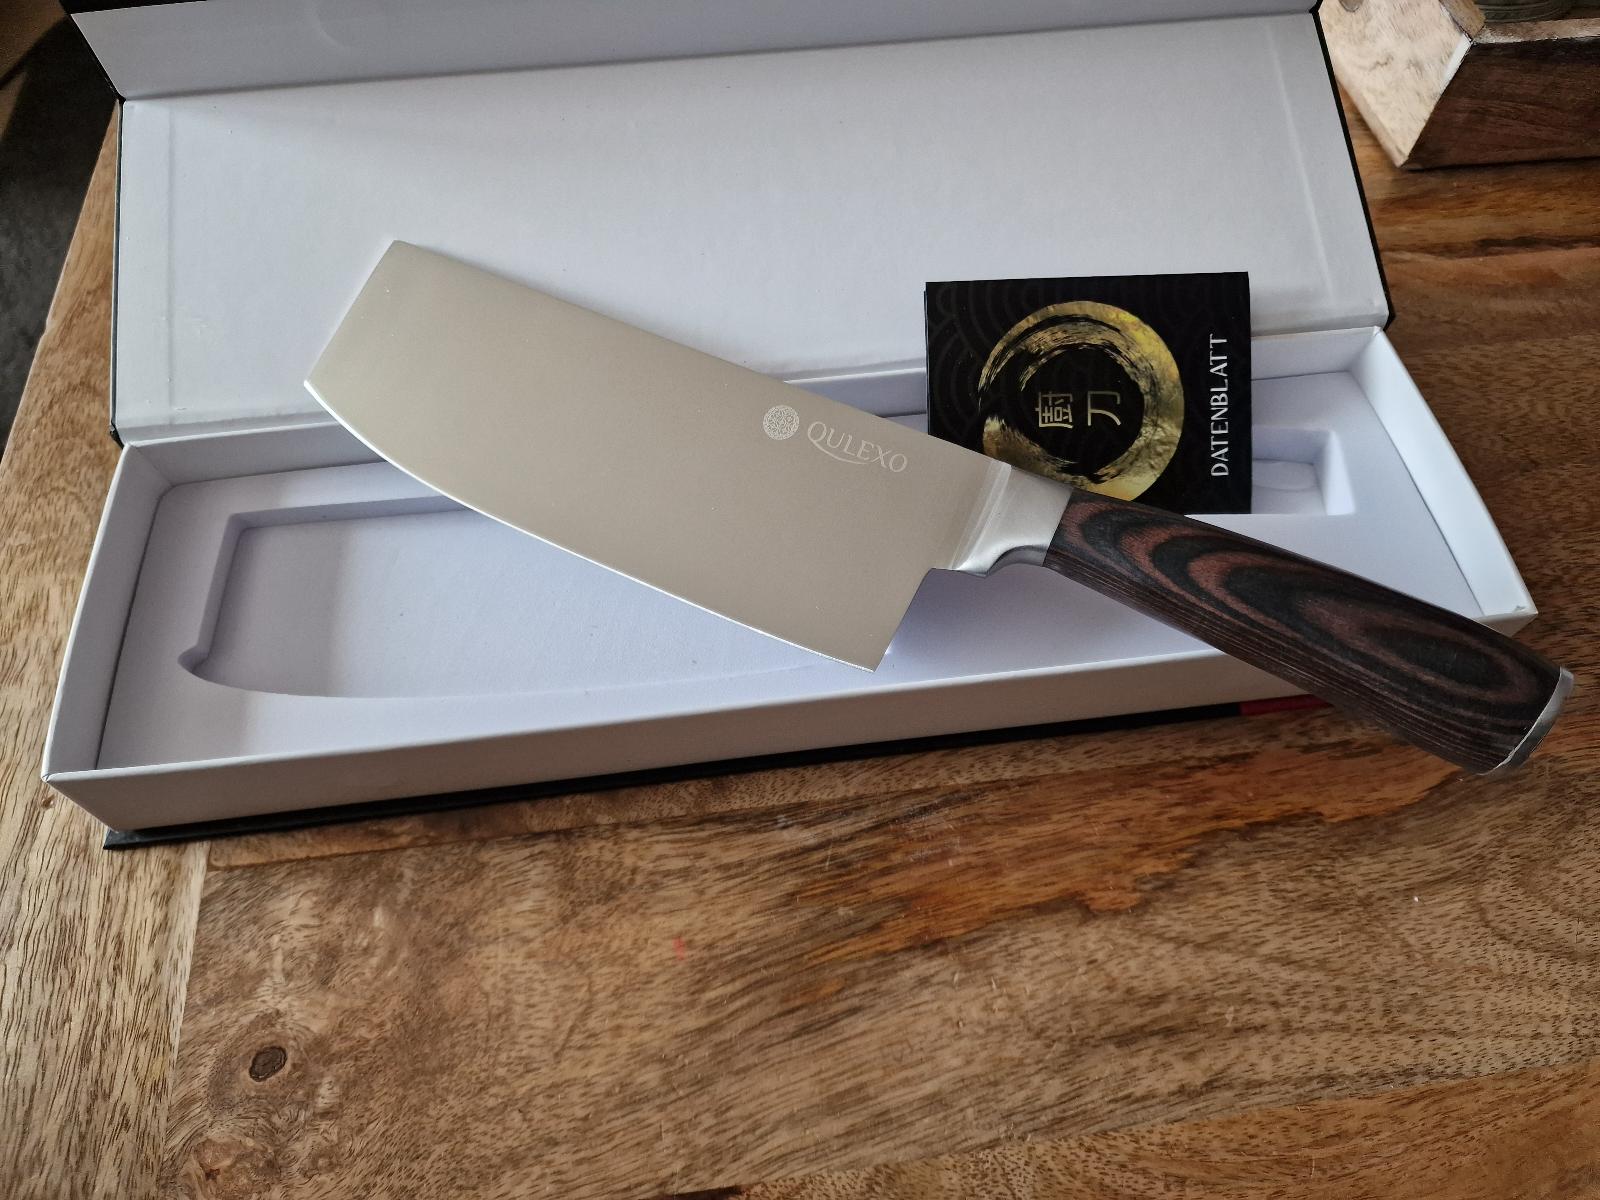 Qulexo Čínský kuchařský nůž extra ostrý [ORIGINÁL]  - Vybavení do kuchyně